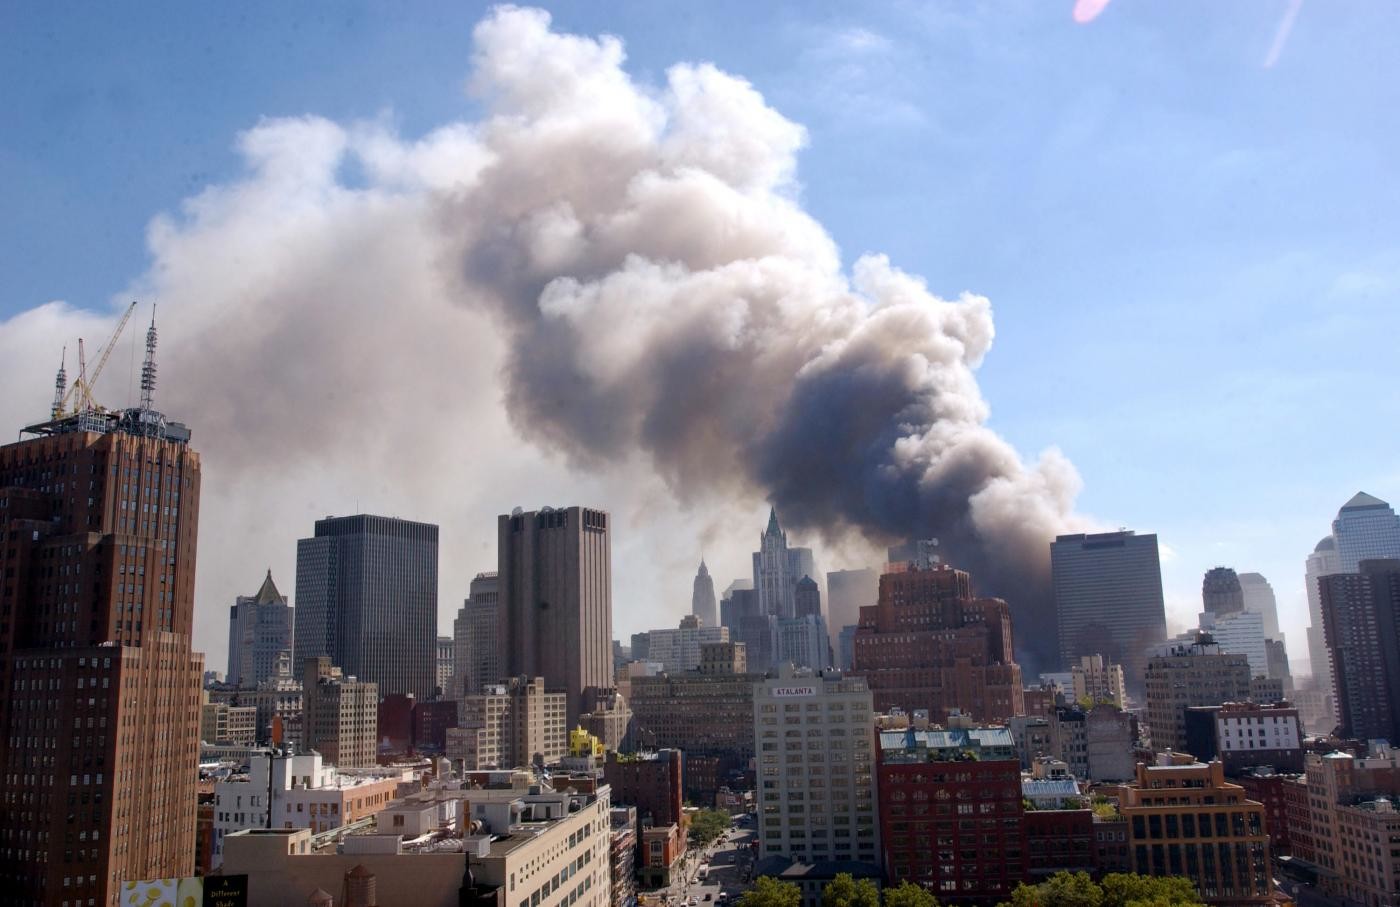 Le torri gemelle in fiamme: le foto storiche dell’attentato dell’11 settembre